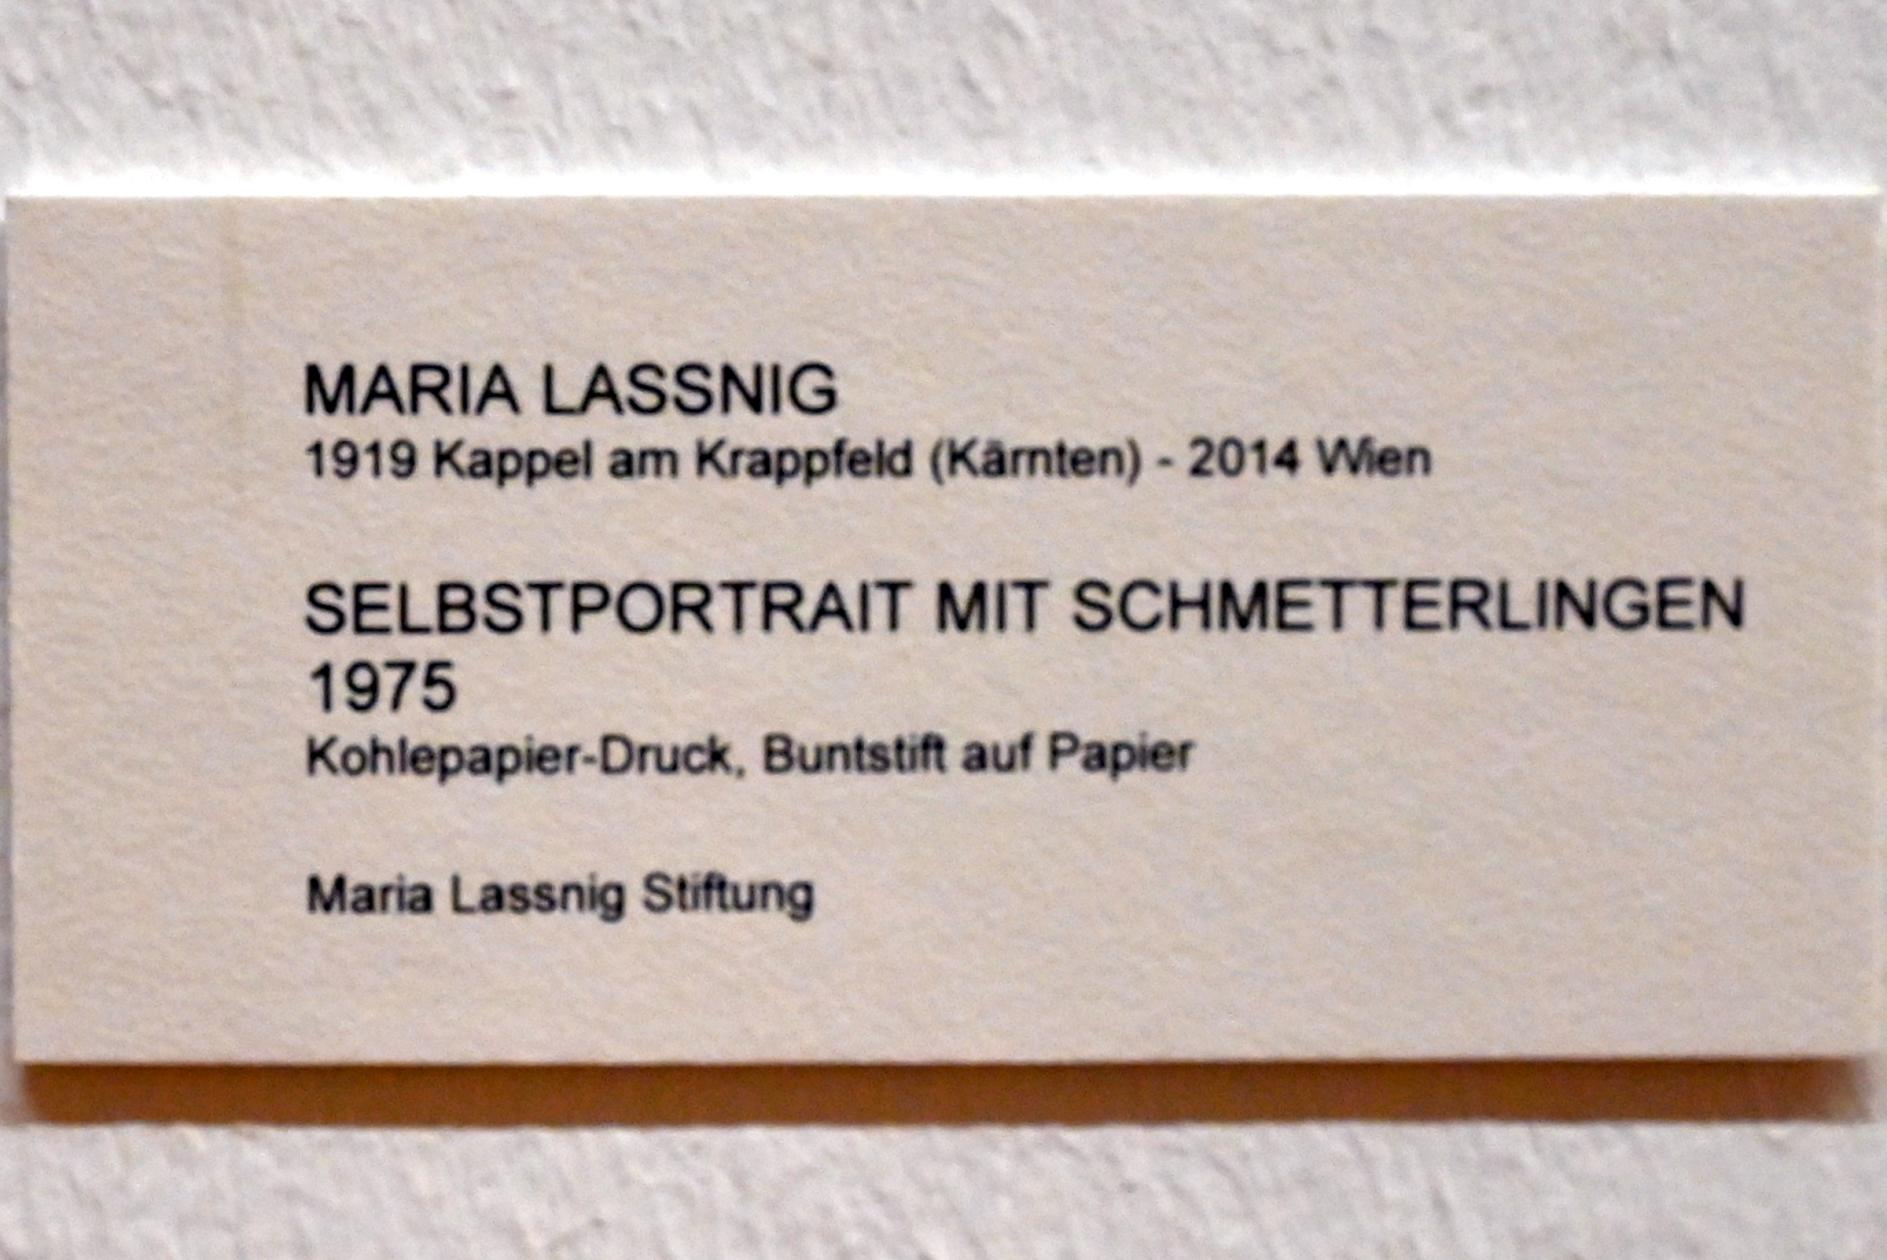 Maria Lassnig (1945–2011), Selbstportrait mit Schmetterlingen, Bonn, Kunstmuseum, Ausstellung "Maria Lassnig - Wach bleiben" vom 10.02. - 08.05.2022, Saal 6, 1975, Bild 2/2